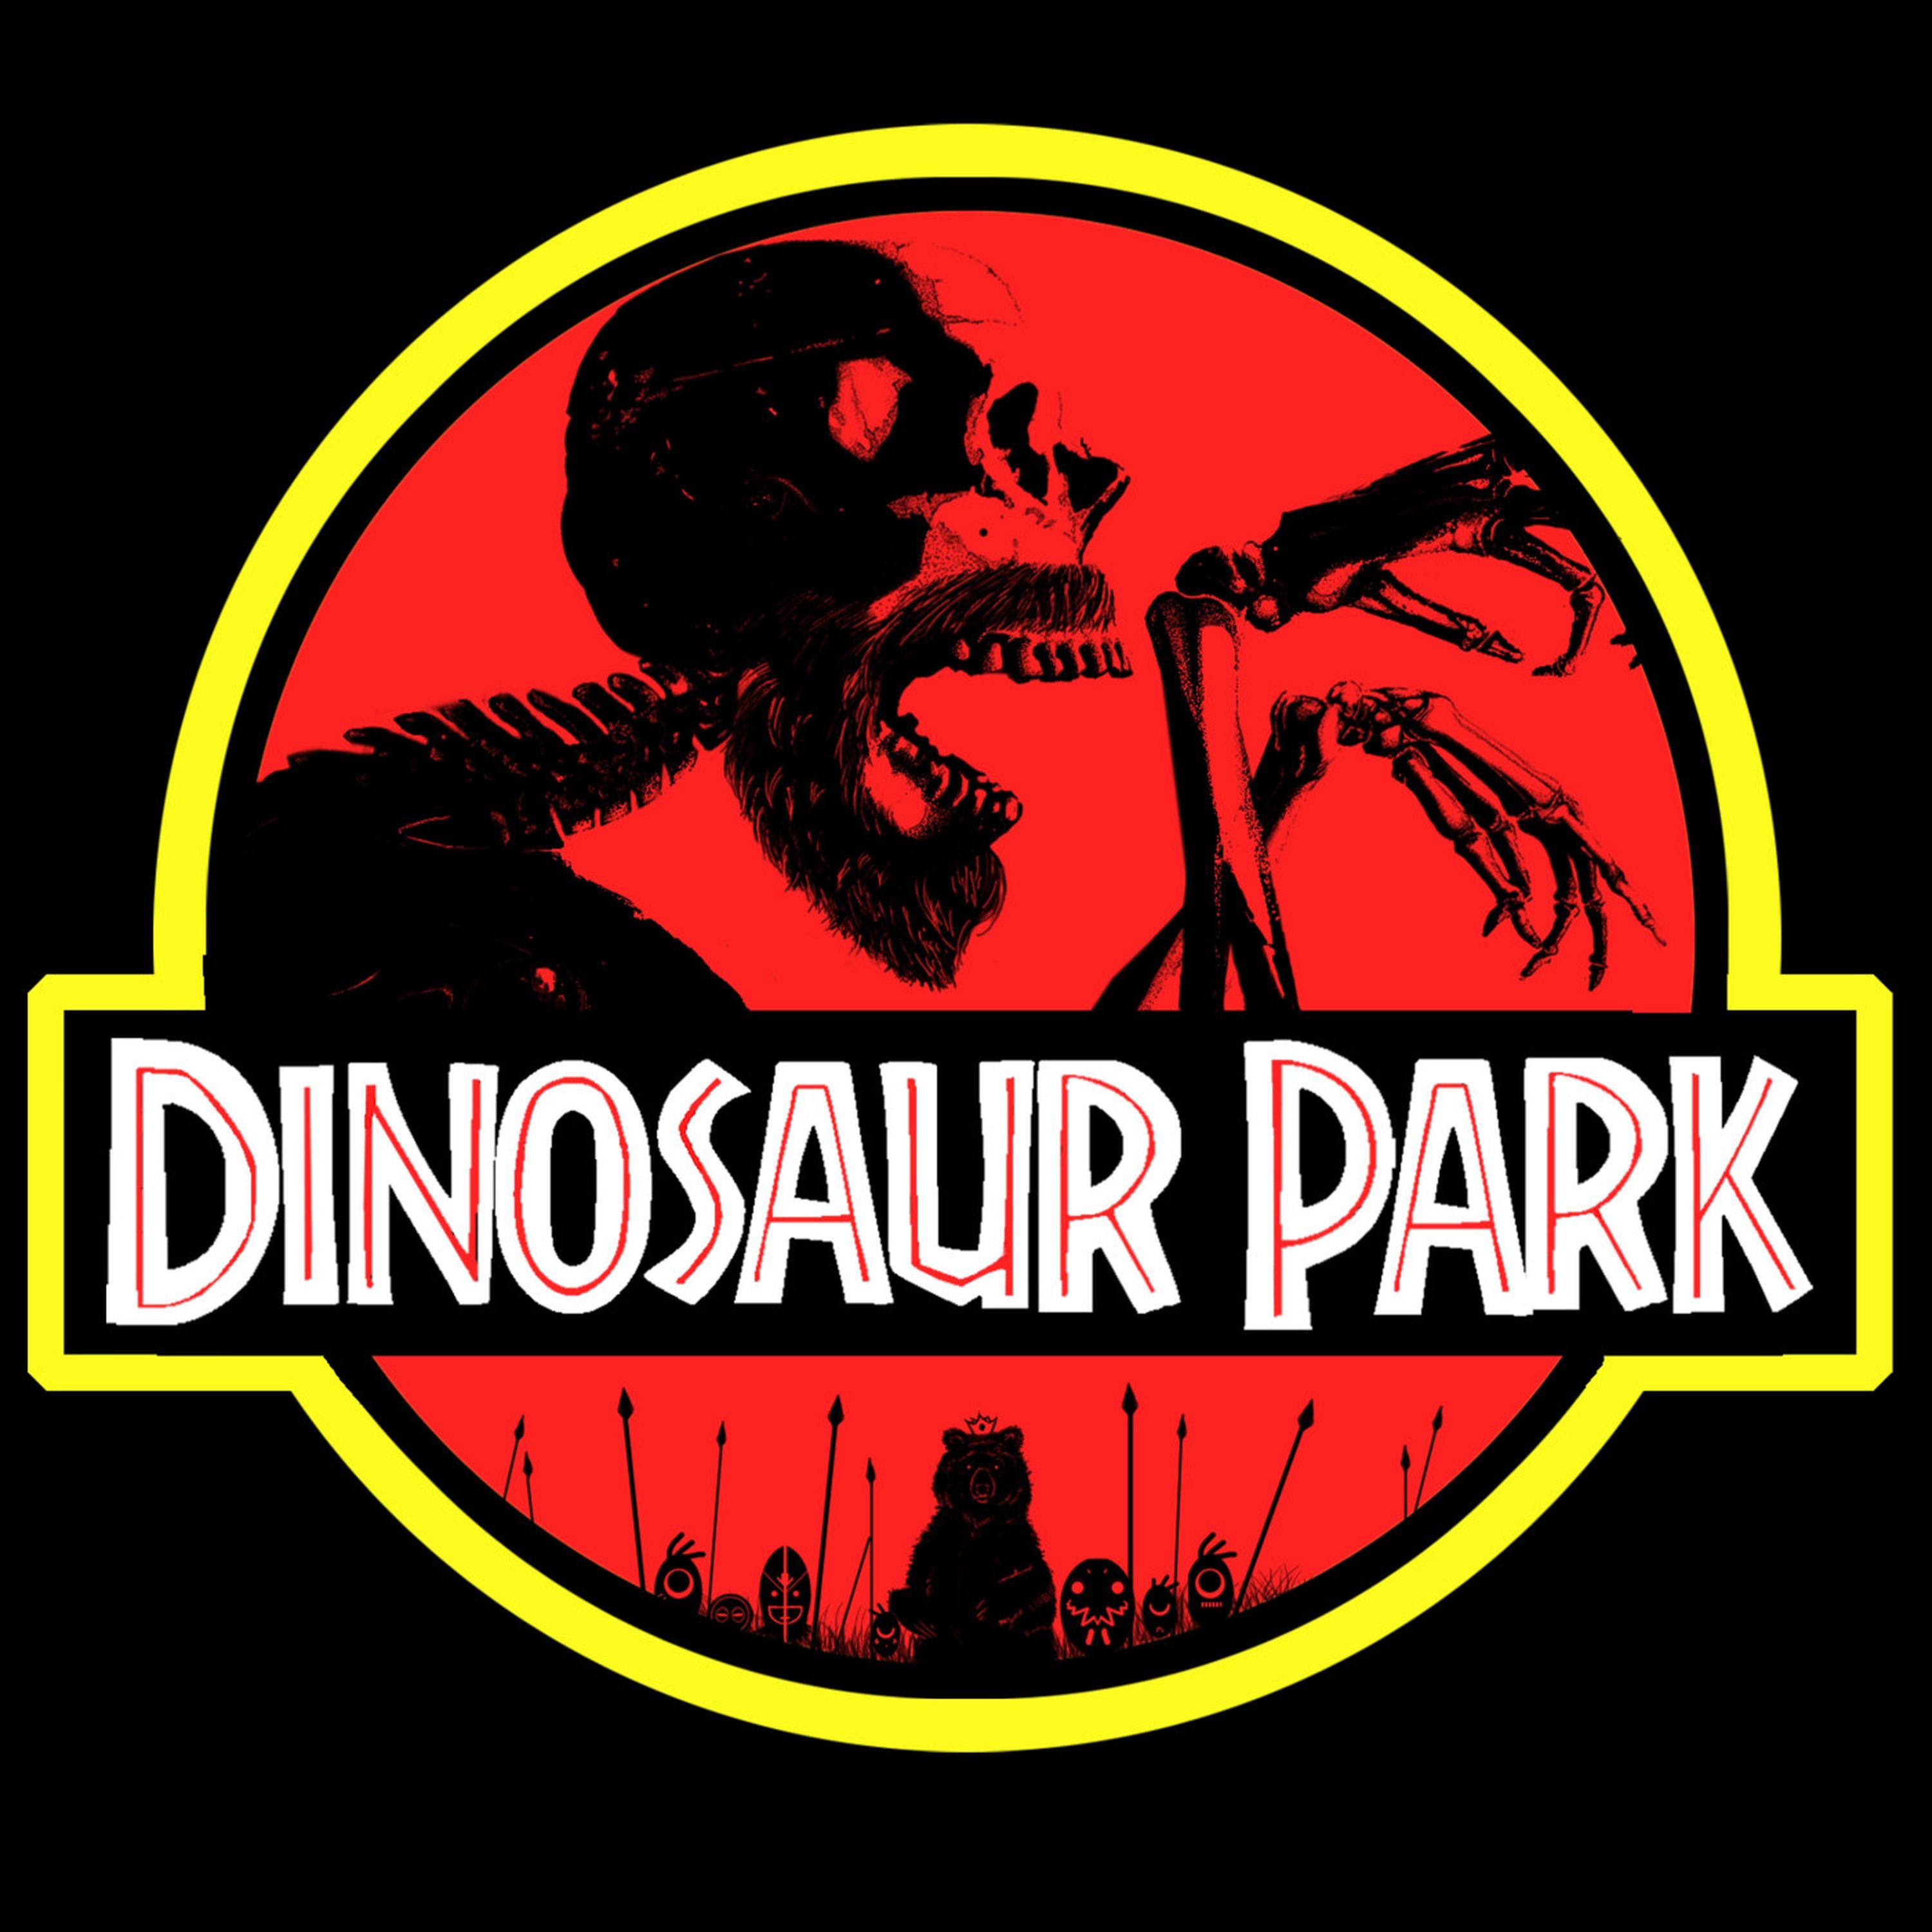 Dinosaur Park #4 Outback World